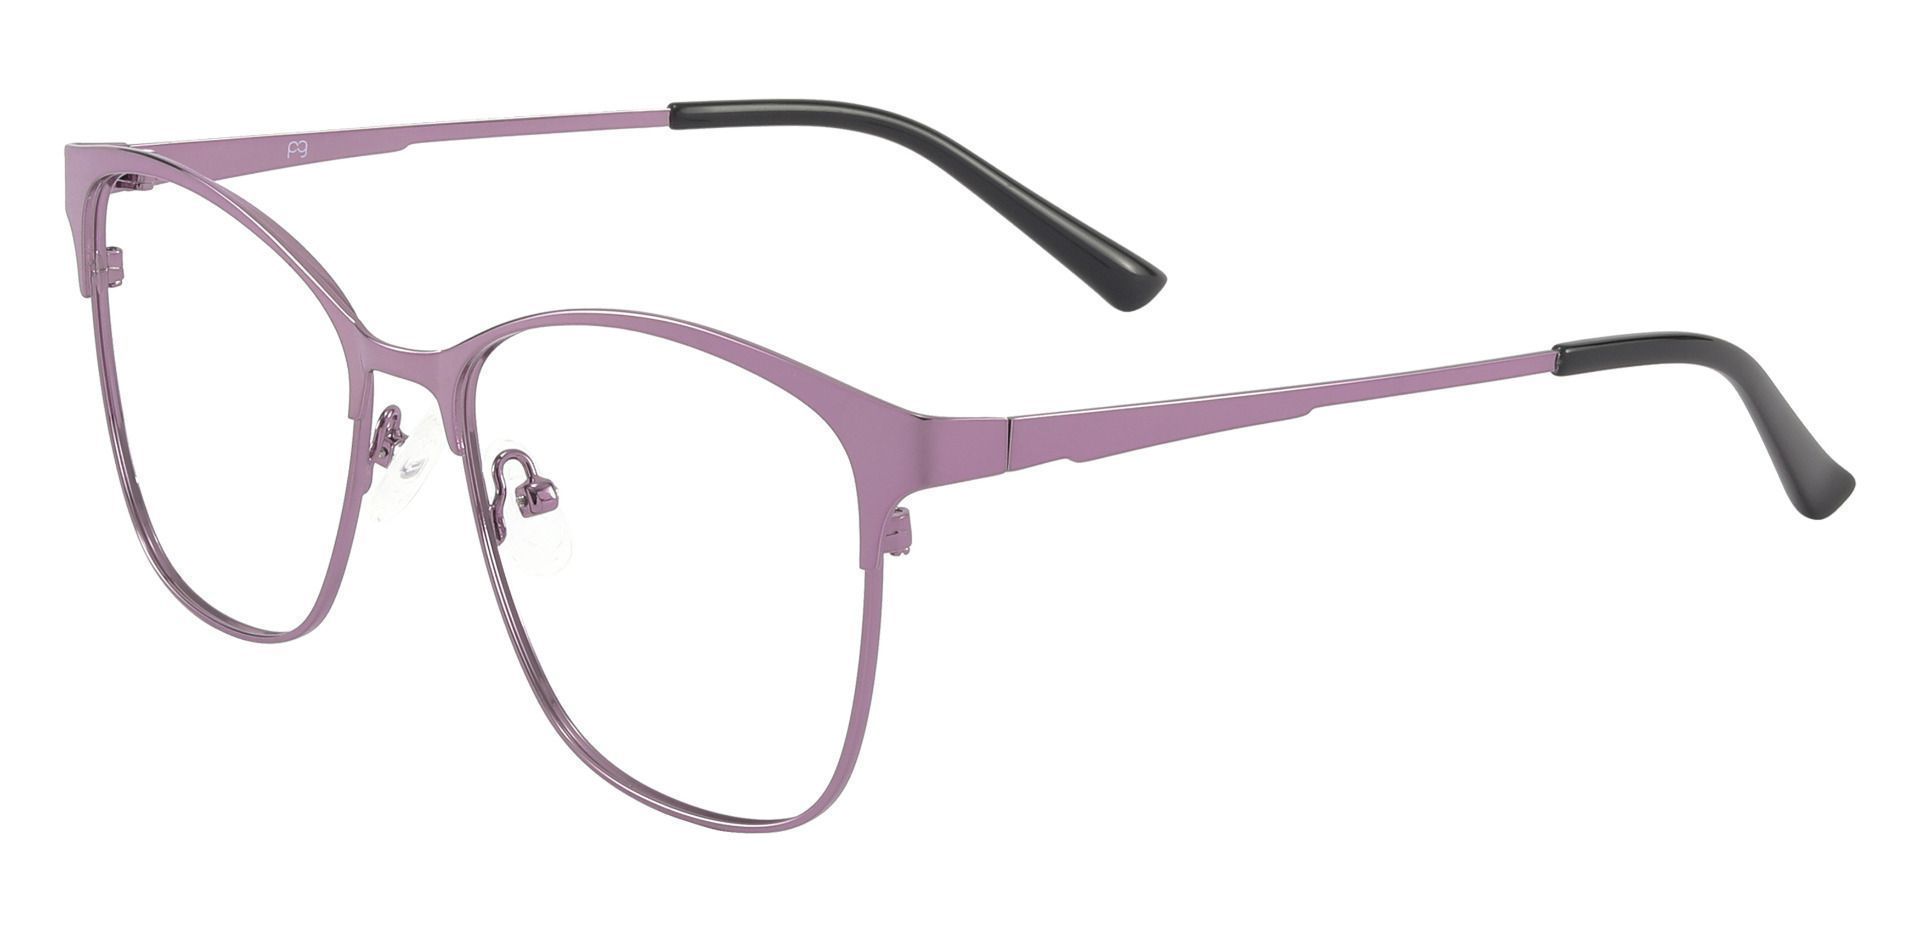 Briony Square Prescription Glasses - Purple